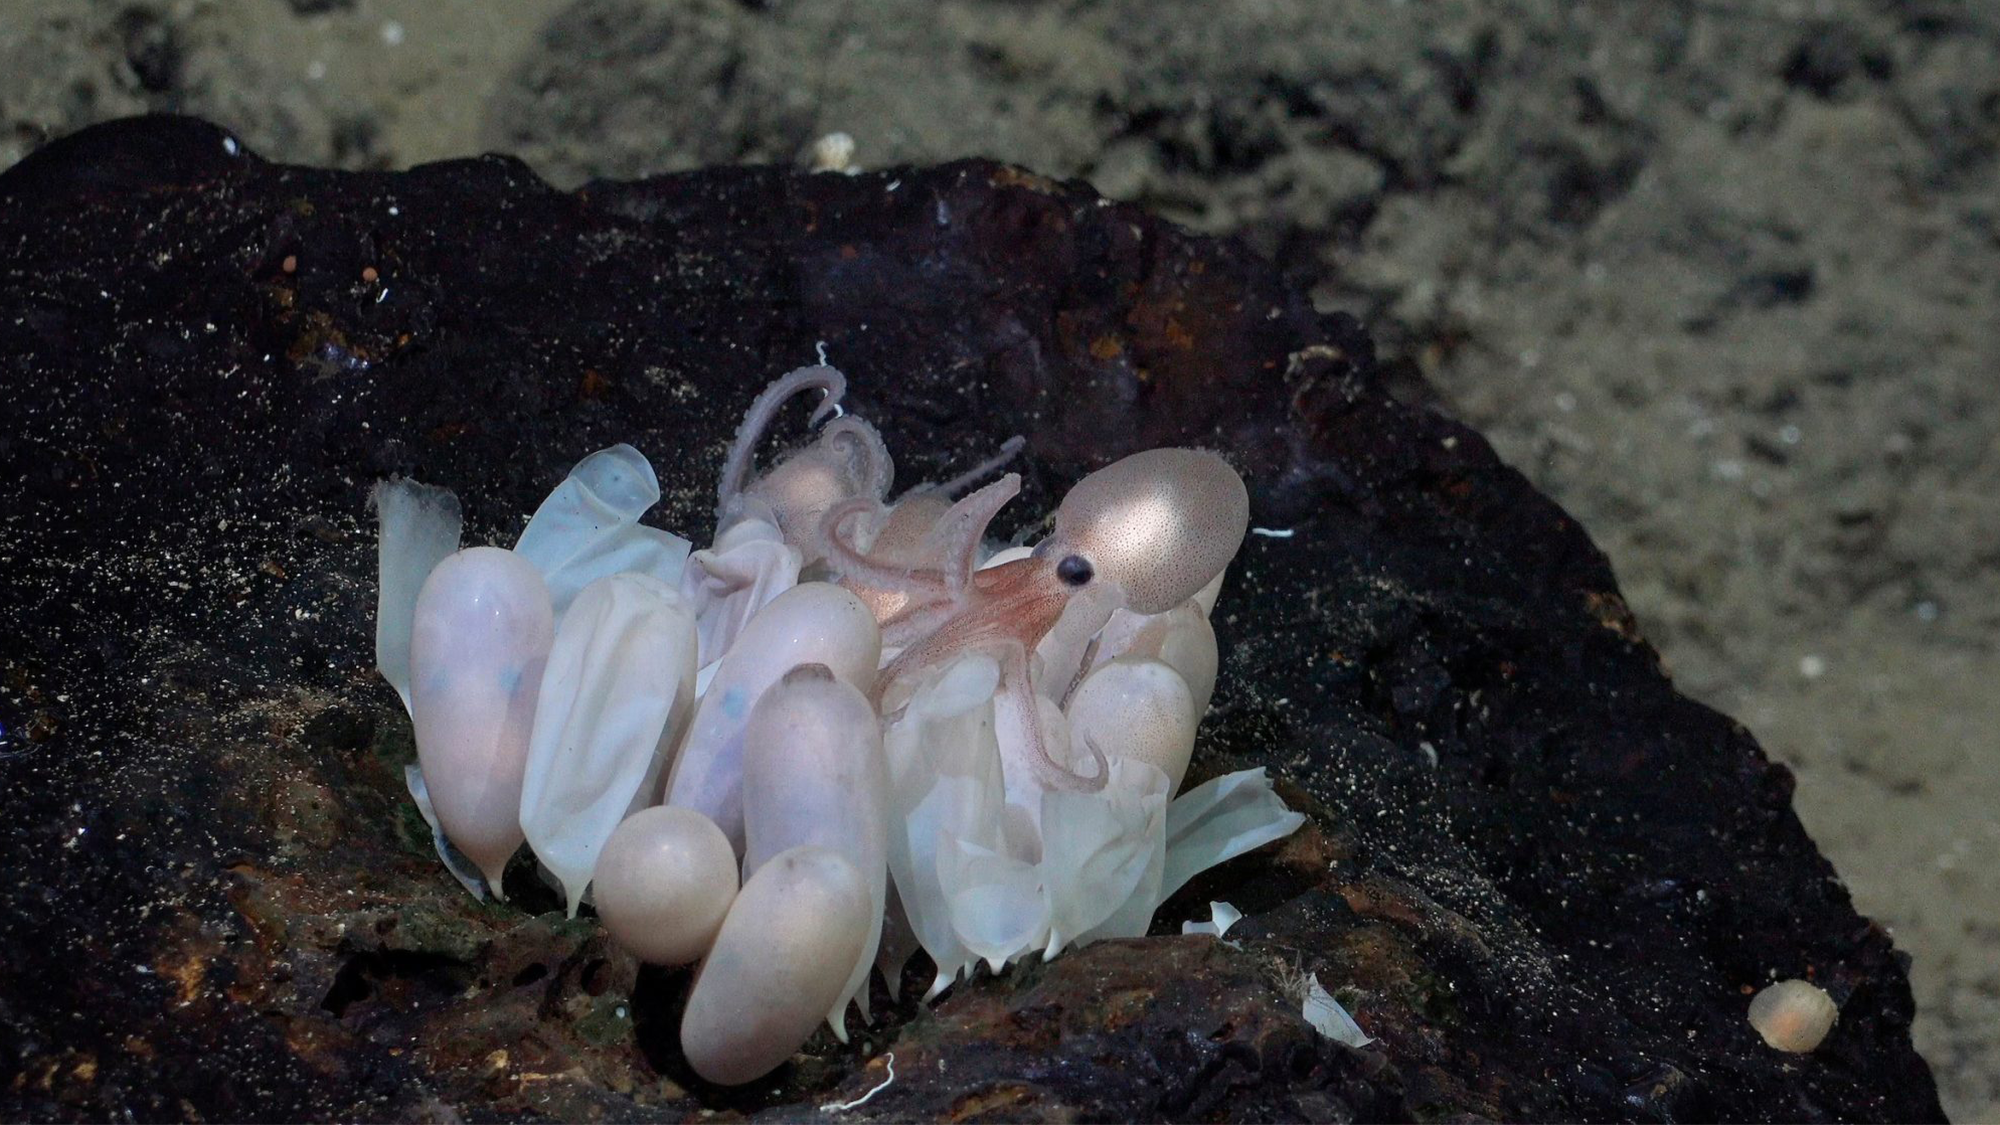 Cuatro nuevas especies de pulpos descubiertas en respiraderos de aguas profundas frente a Costa Rica